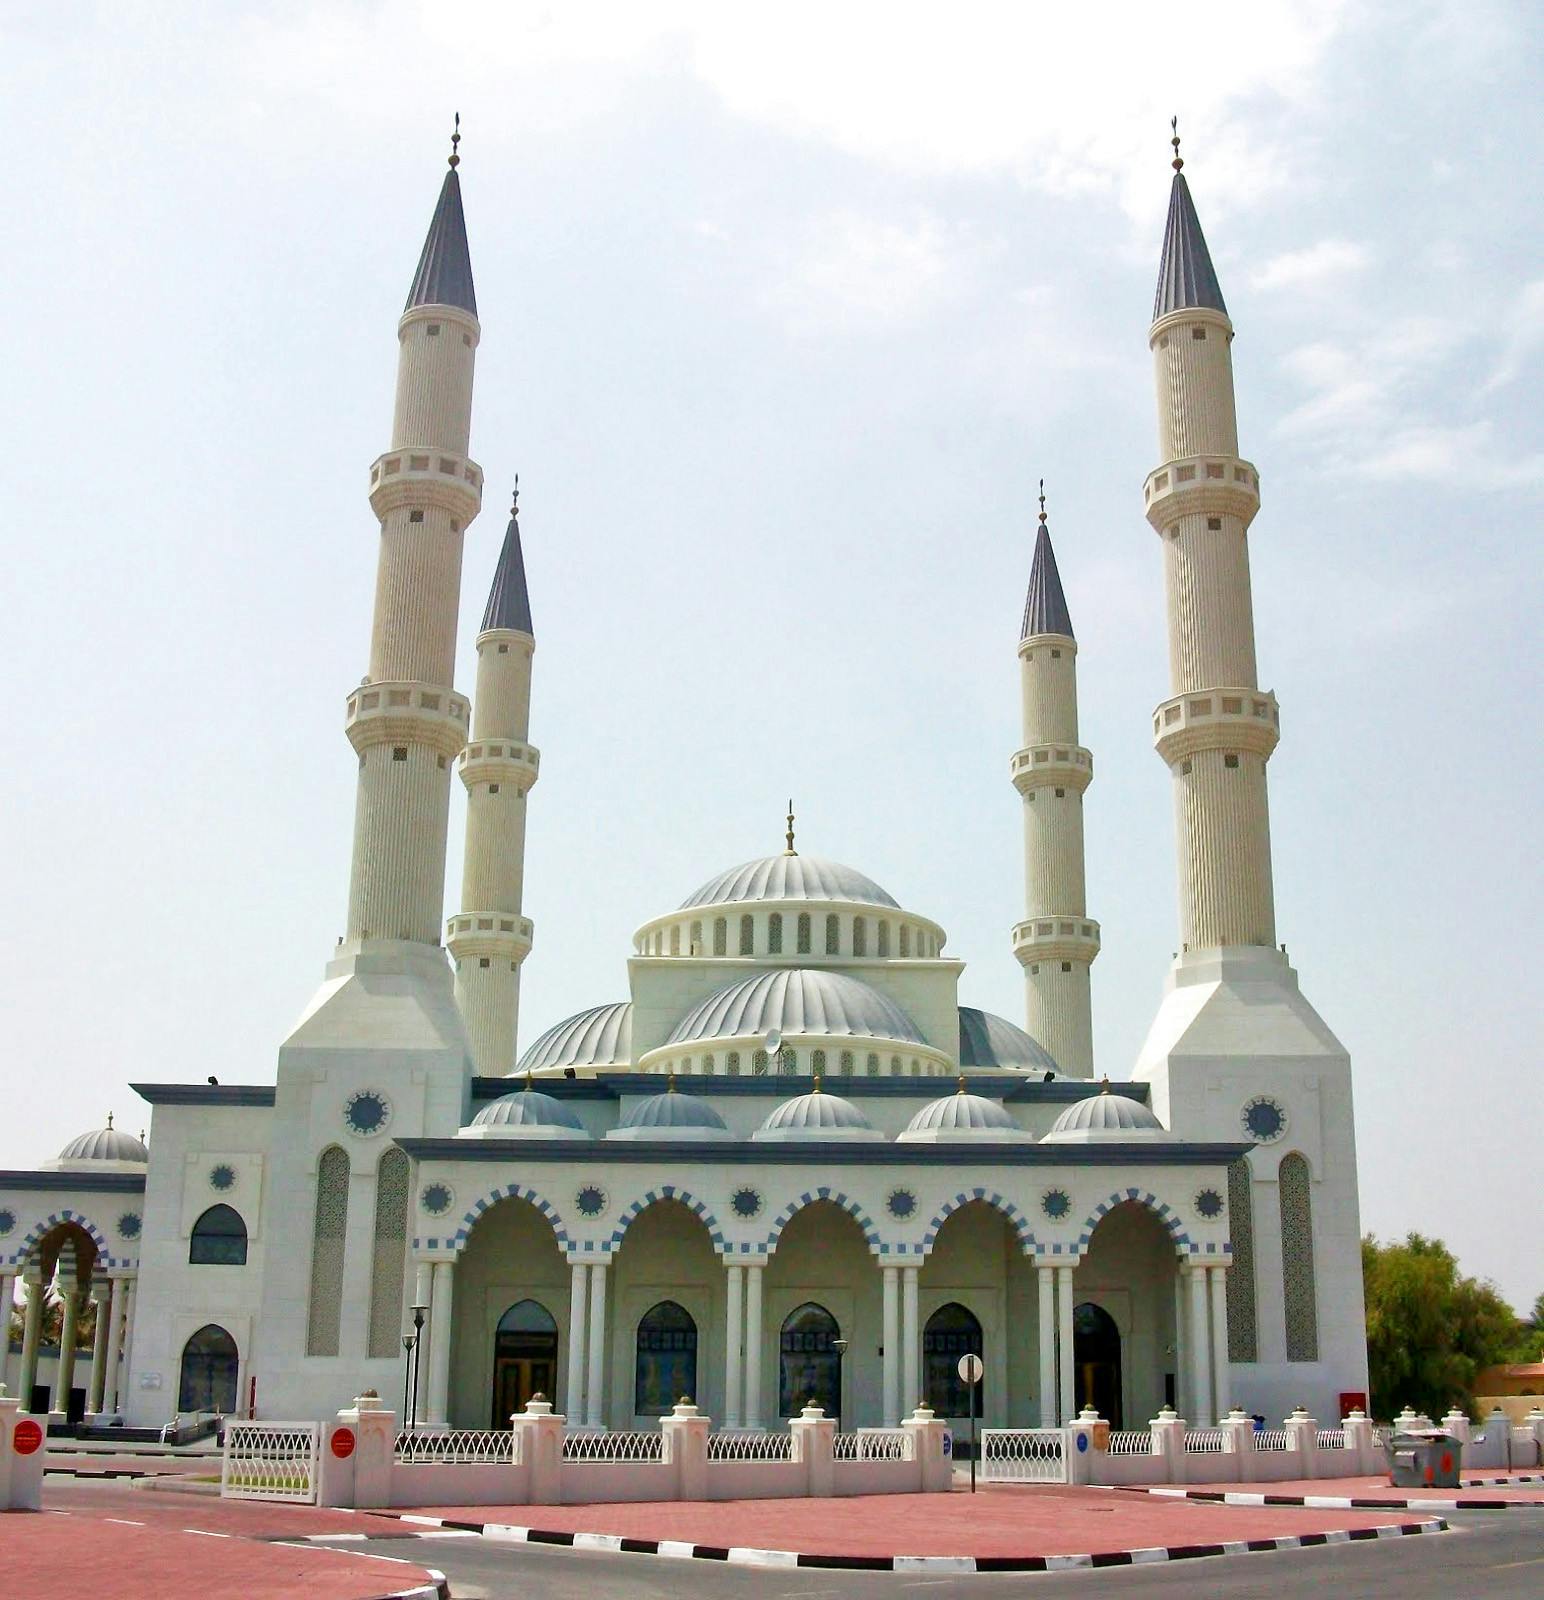 al-farooq-omar-ibn-al-khattab-mosque-in-dubai-united-arab-emirates-6.JPG